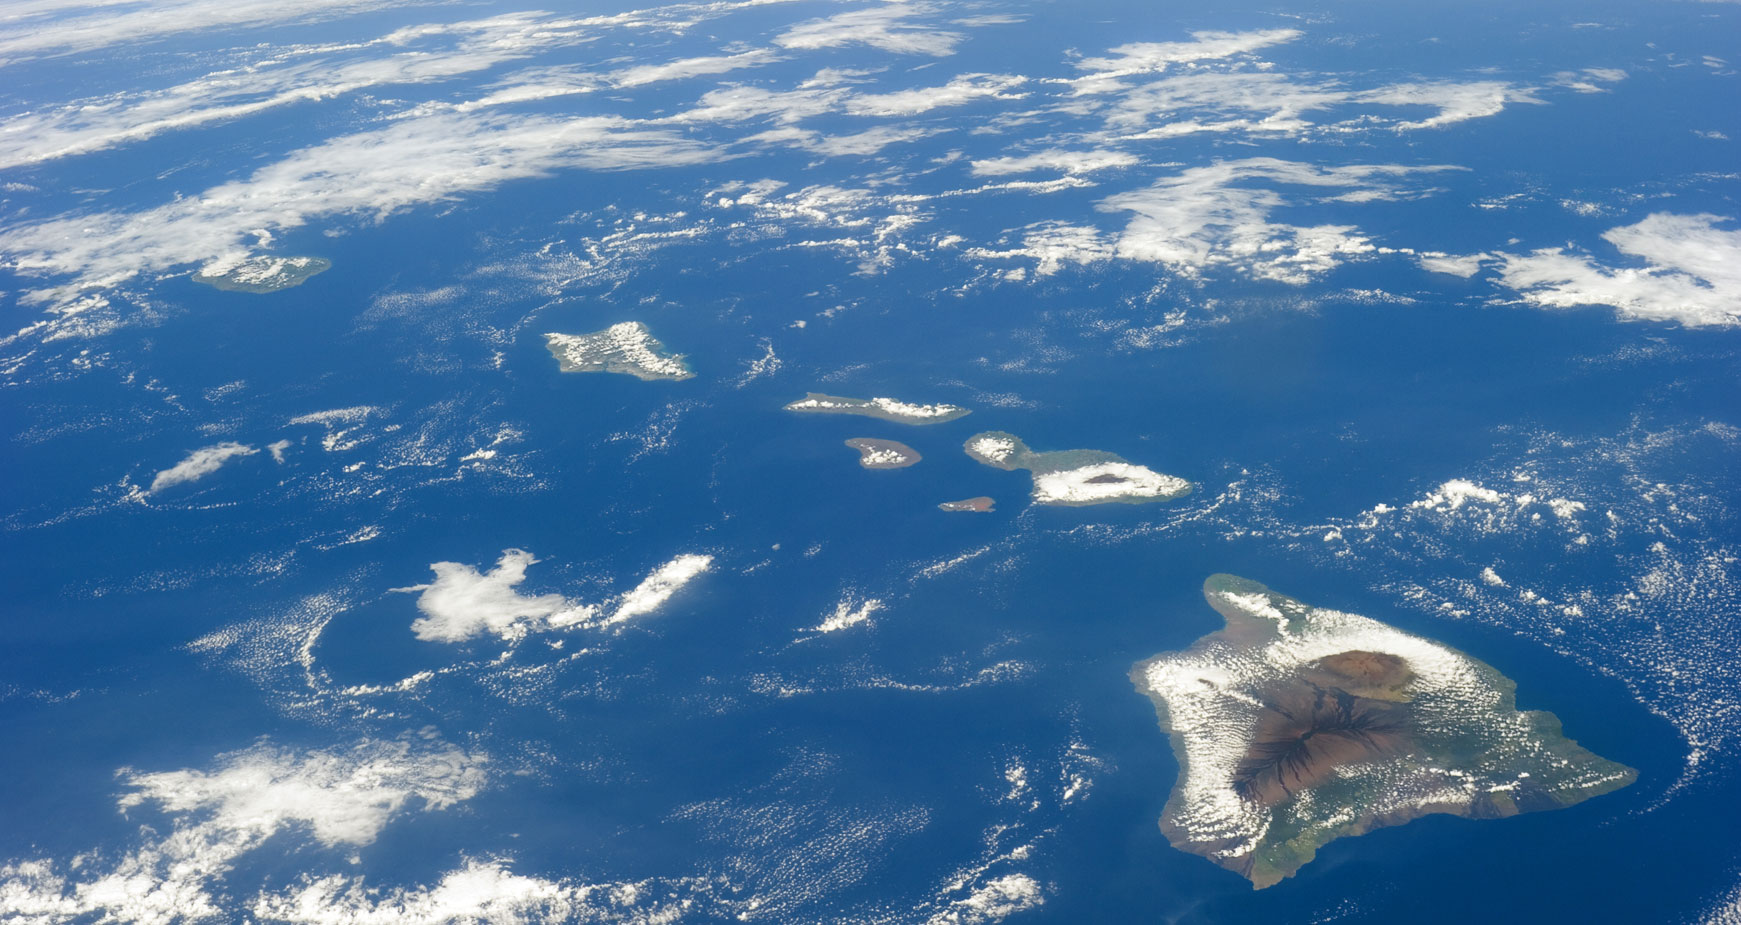 hawaiian islands from space - nasa